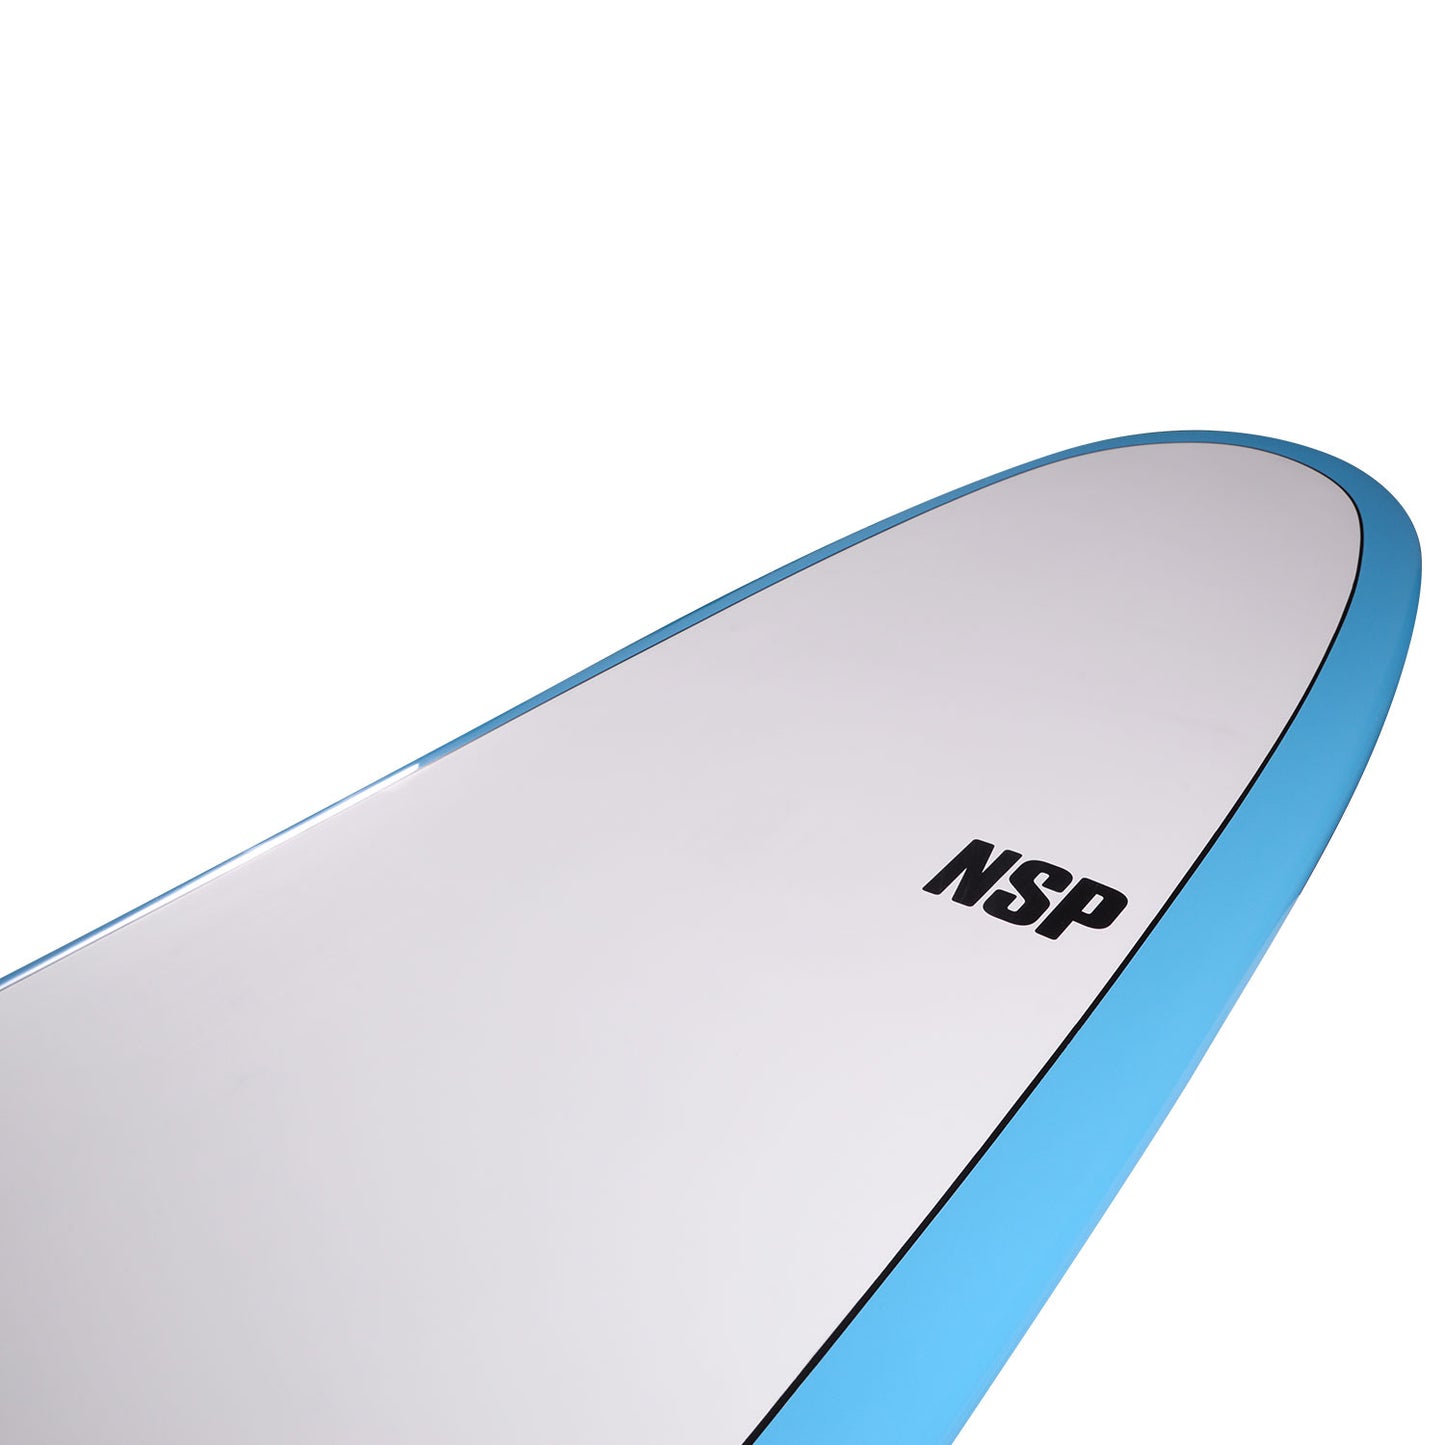 NSP Longboard 9’4 Elements HDT Sleepwalker - Blue